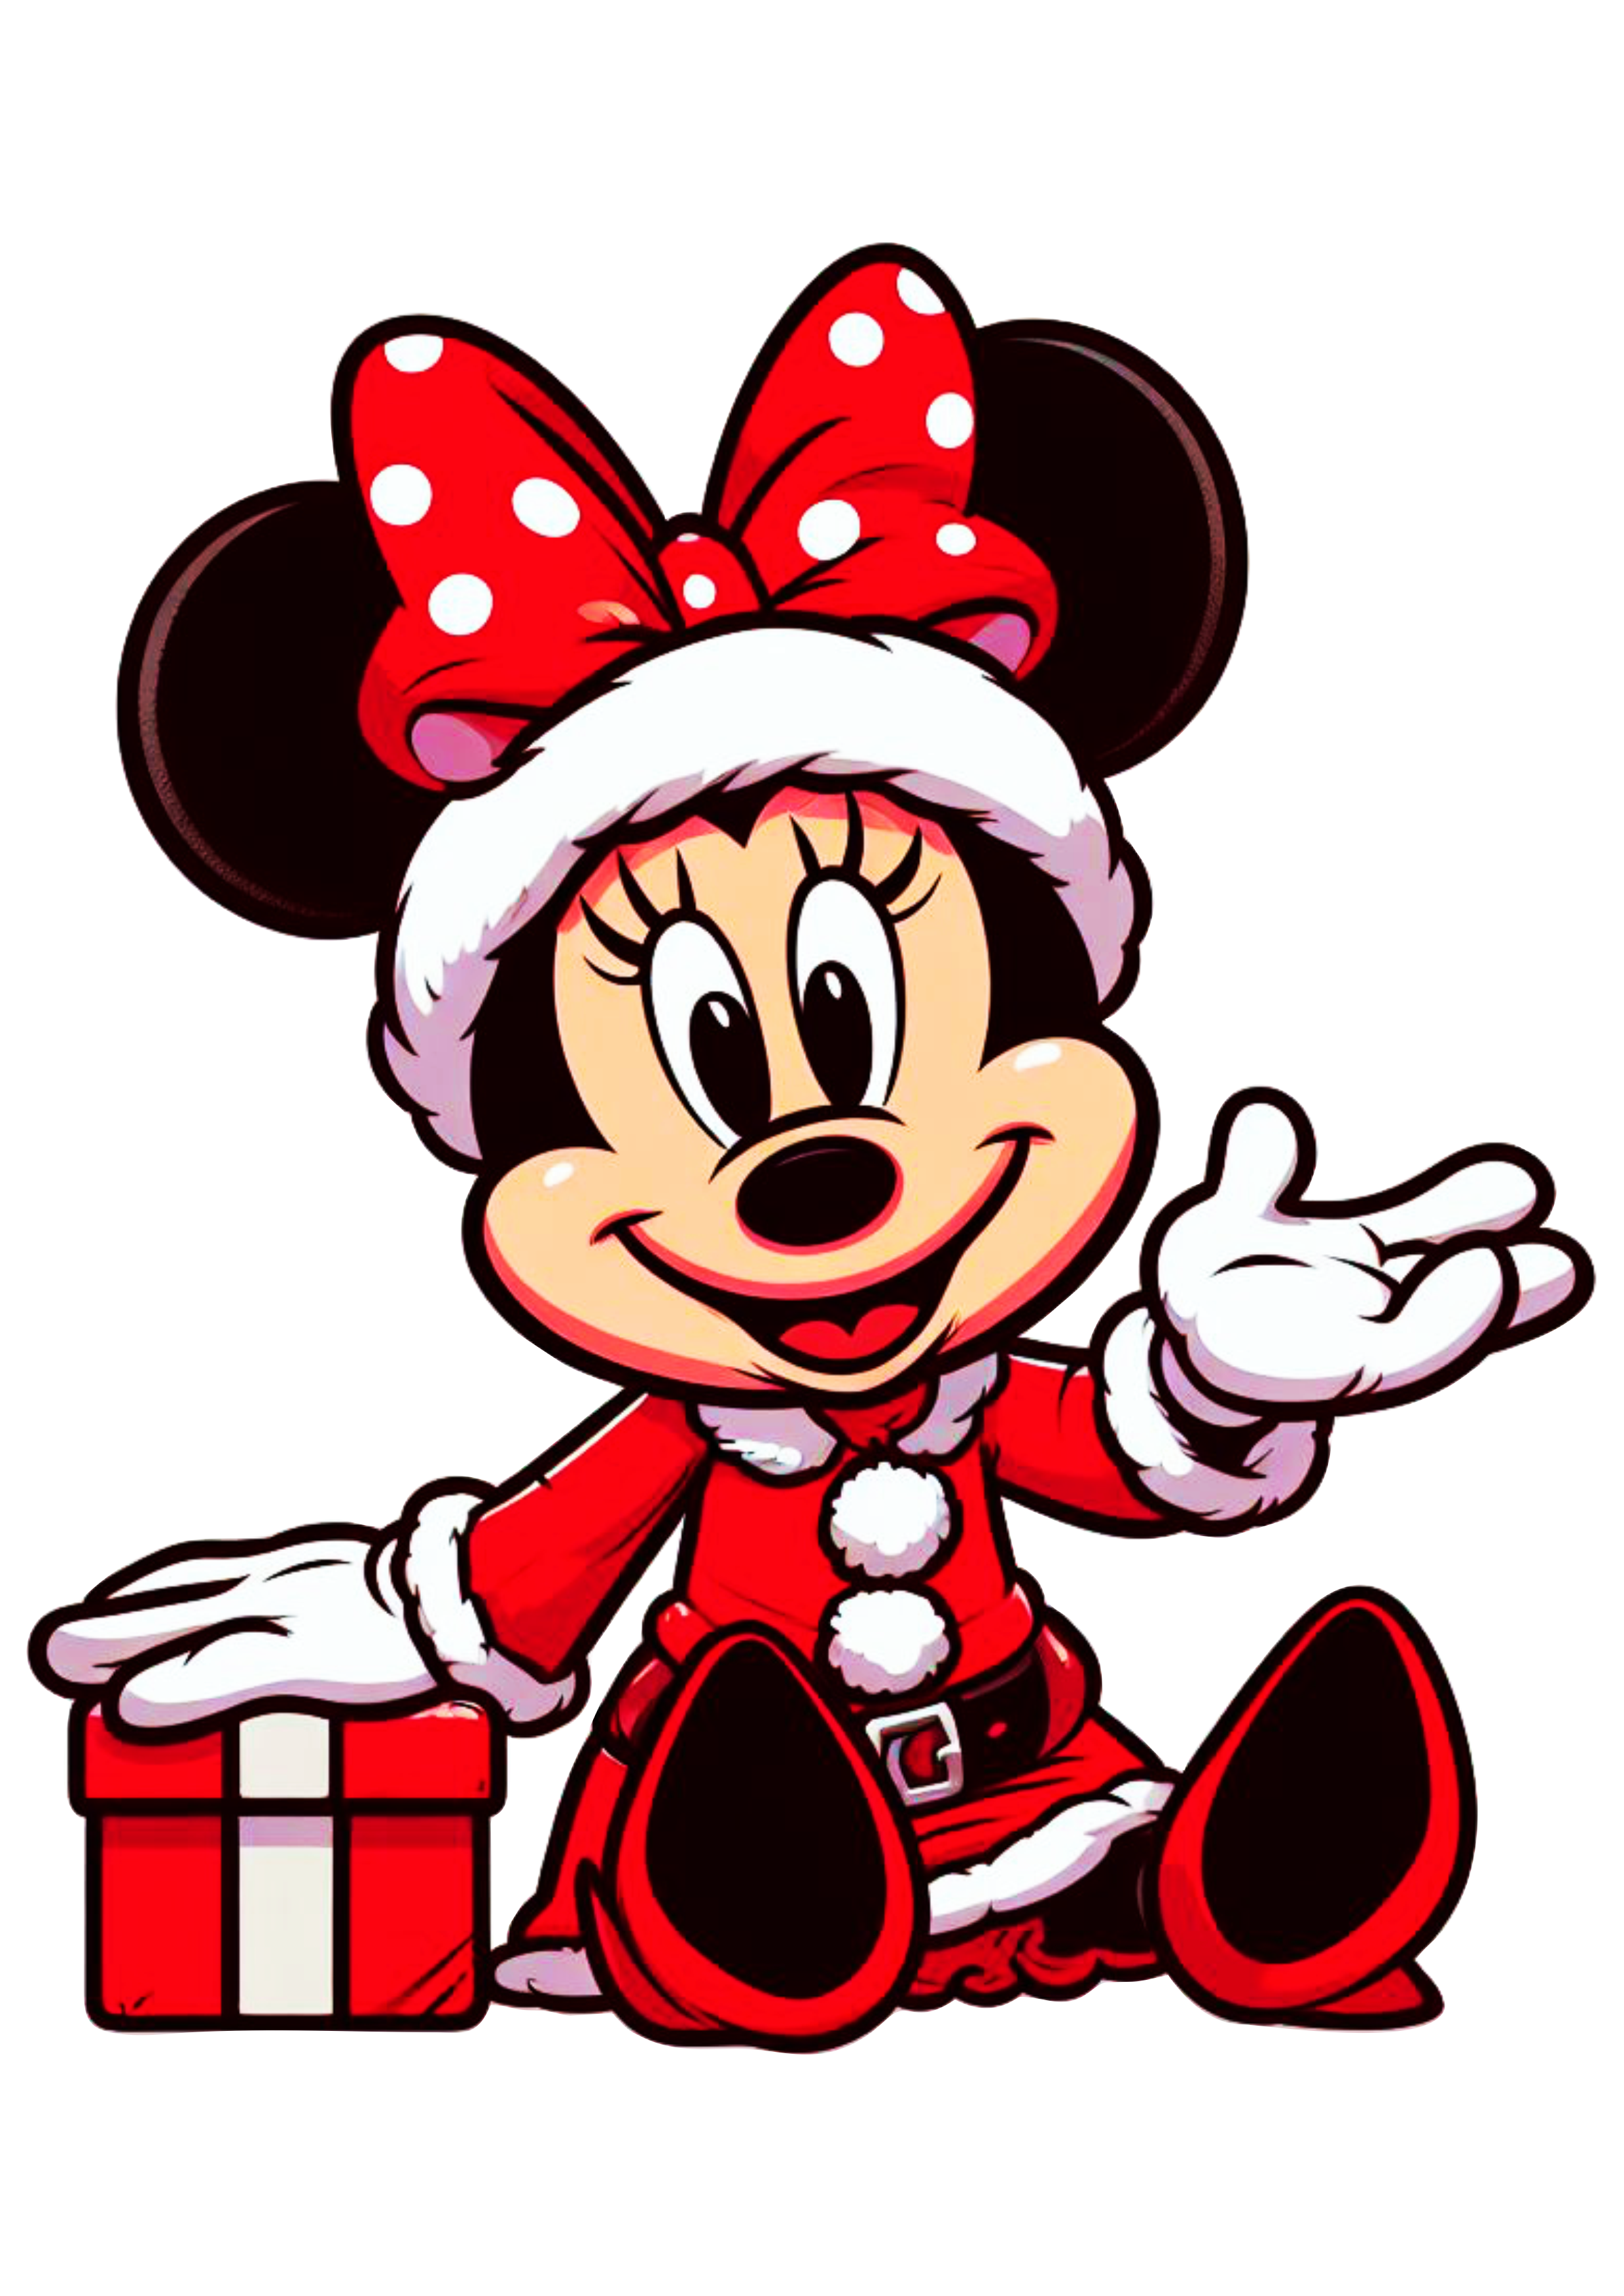 Minnie Mouse vermelha com vestido de natal desenho infantil disney ilustração png